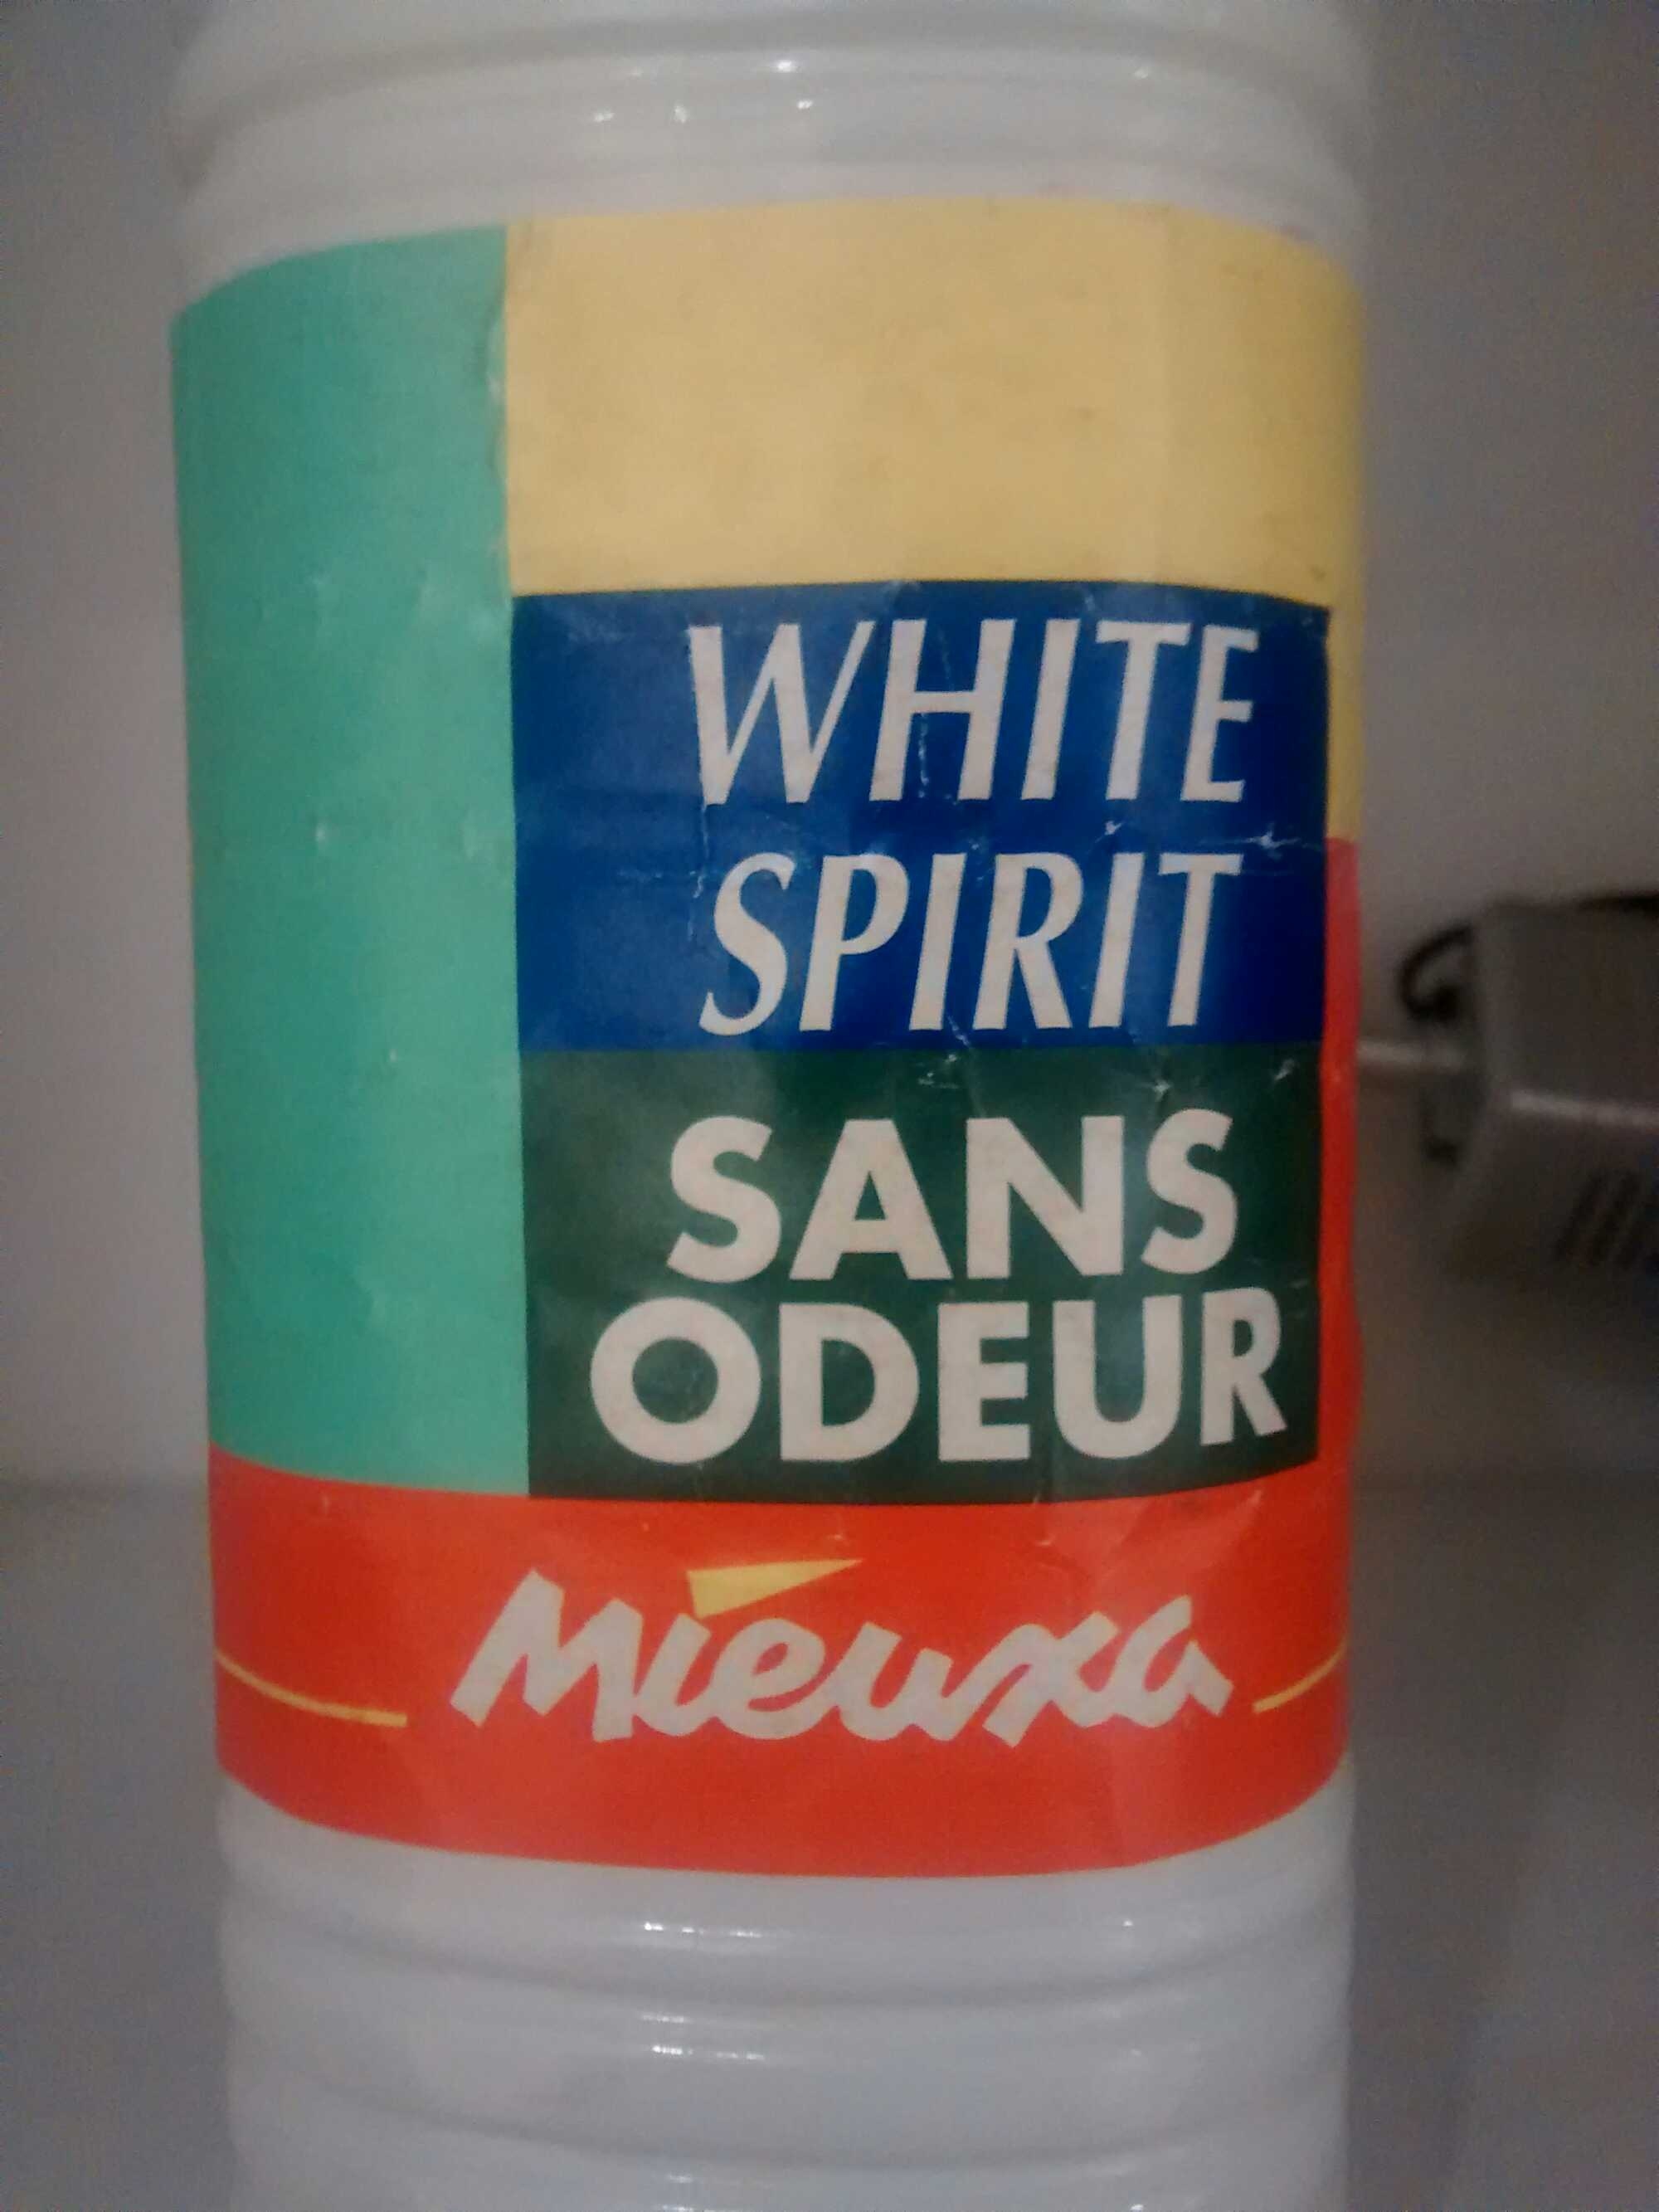 White spirit sans odeur - 製品 - en